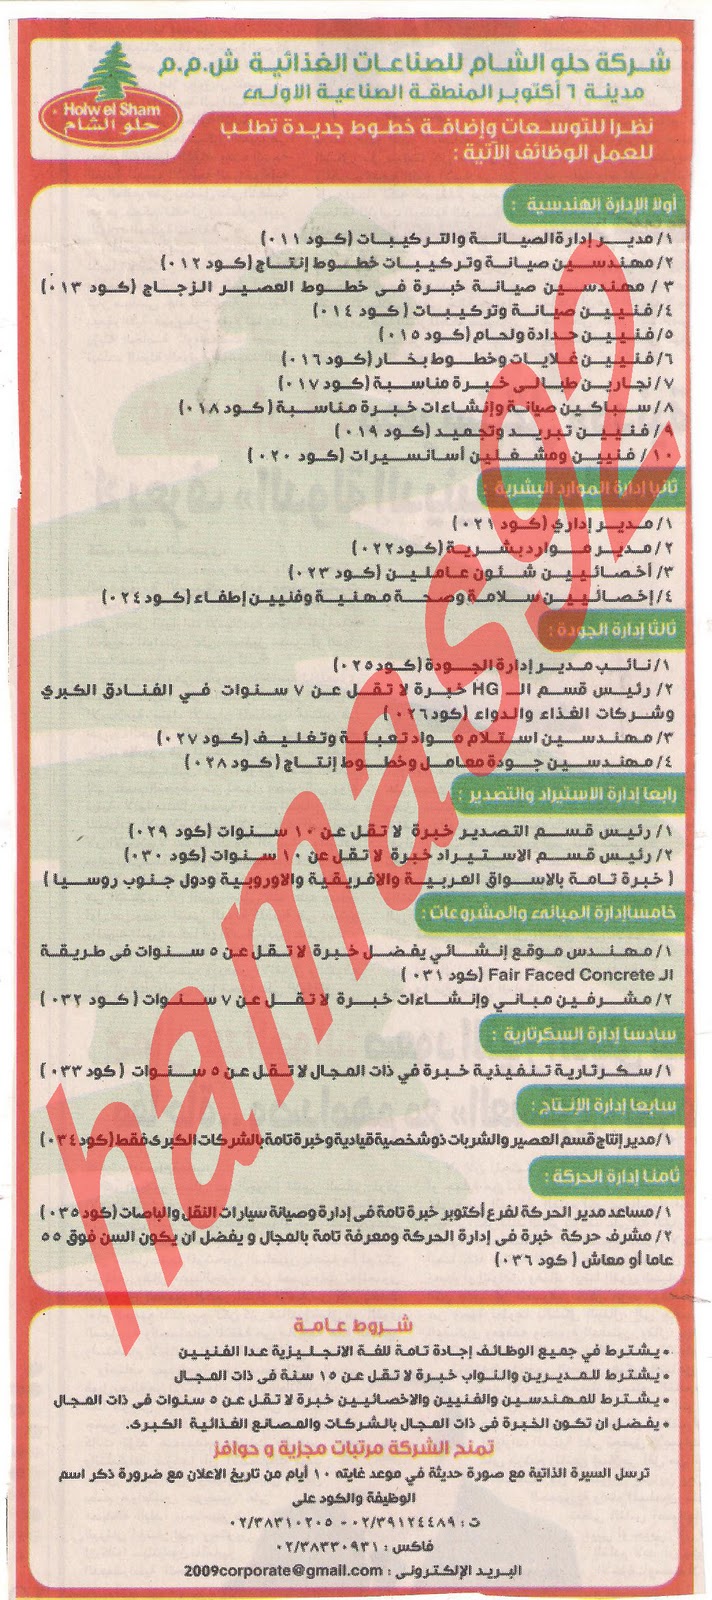 وظائف جريدة المصرى اليوم الاحد 4\12\2011 , وظائف شركة حلو الشام للصناعات الغذائية Picture+006